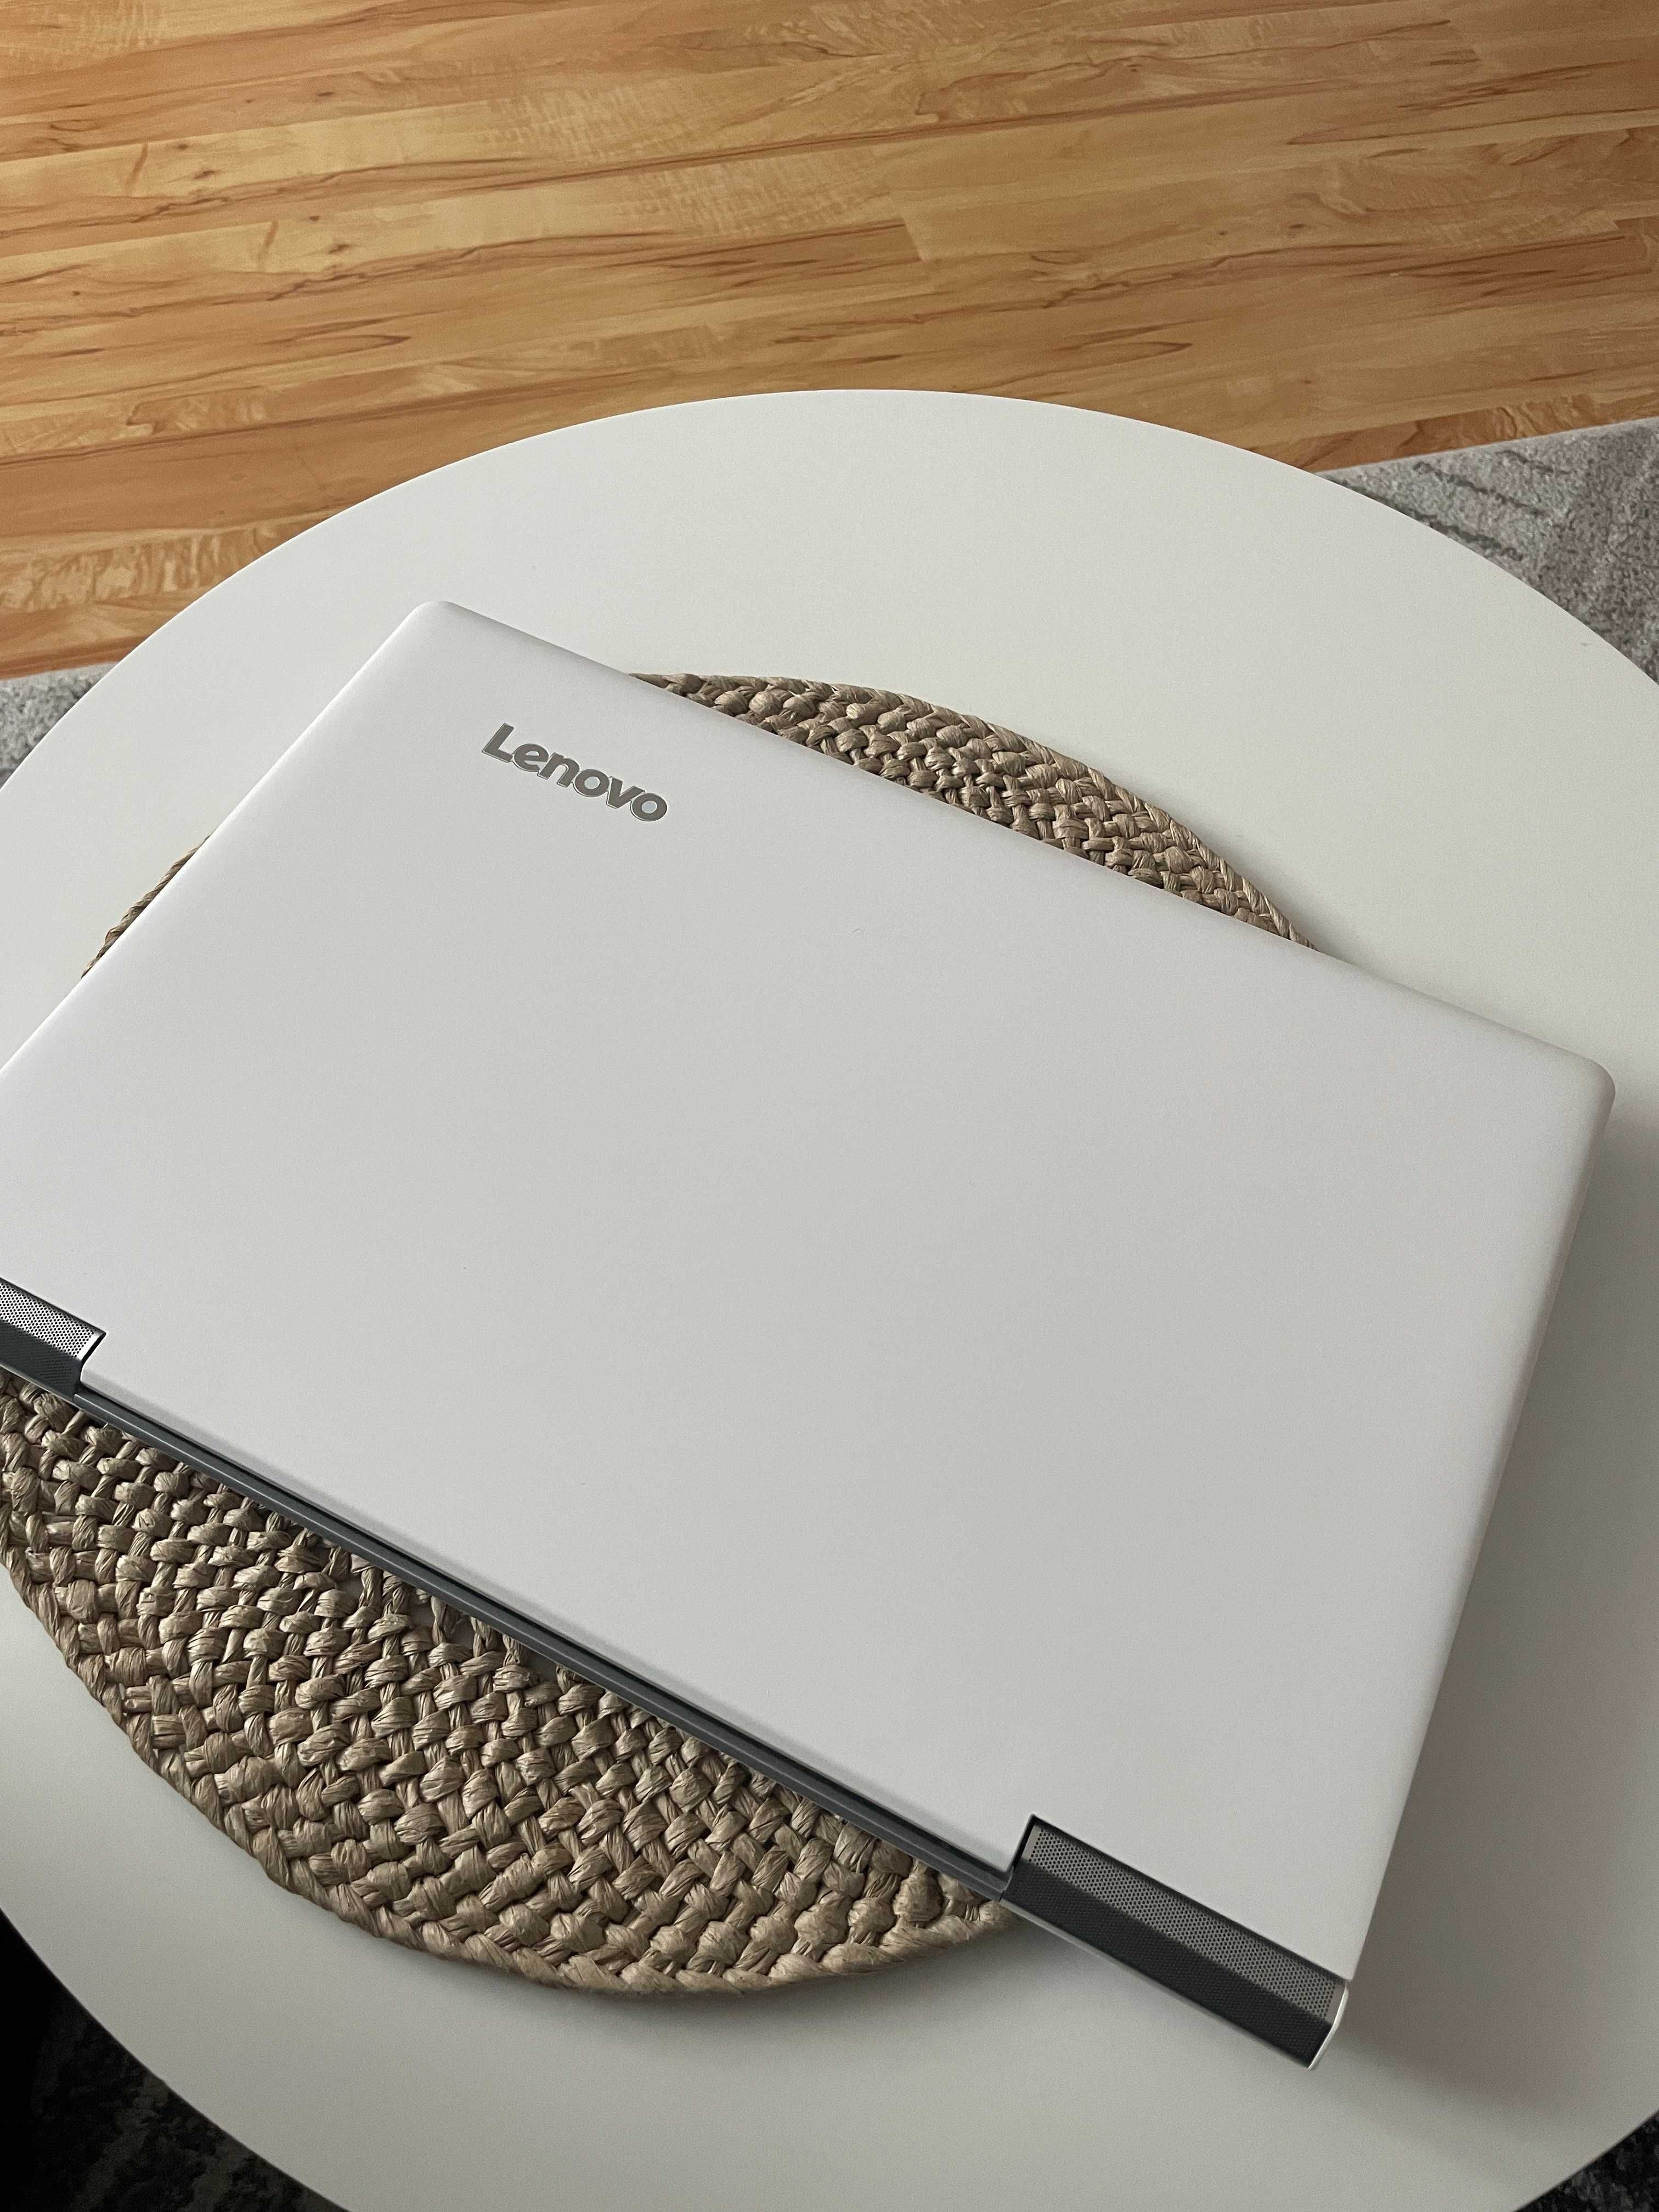 Laptop gamingowy Lenovo IdeaPad 700 15ISK i7, 16GB, SSD + HDD, Geforce